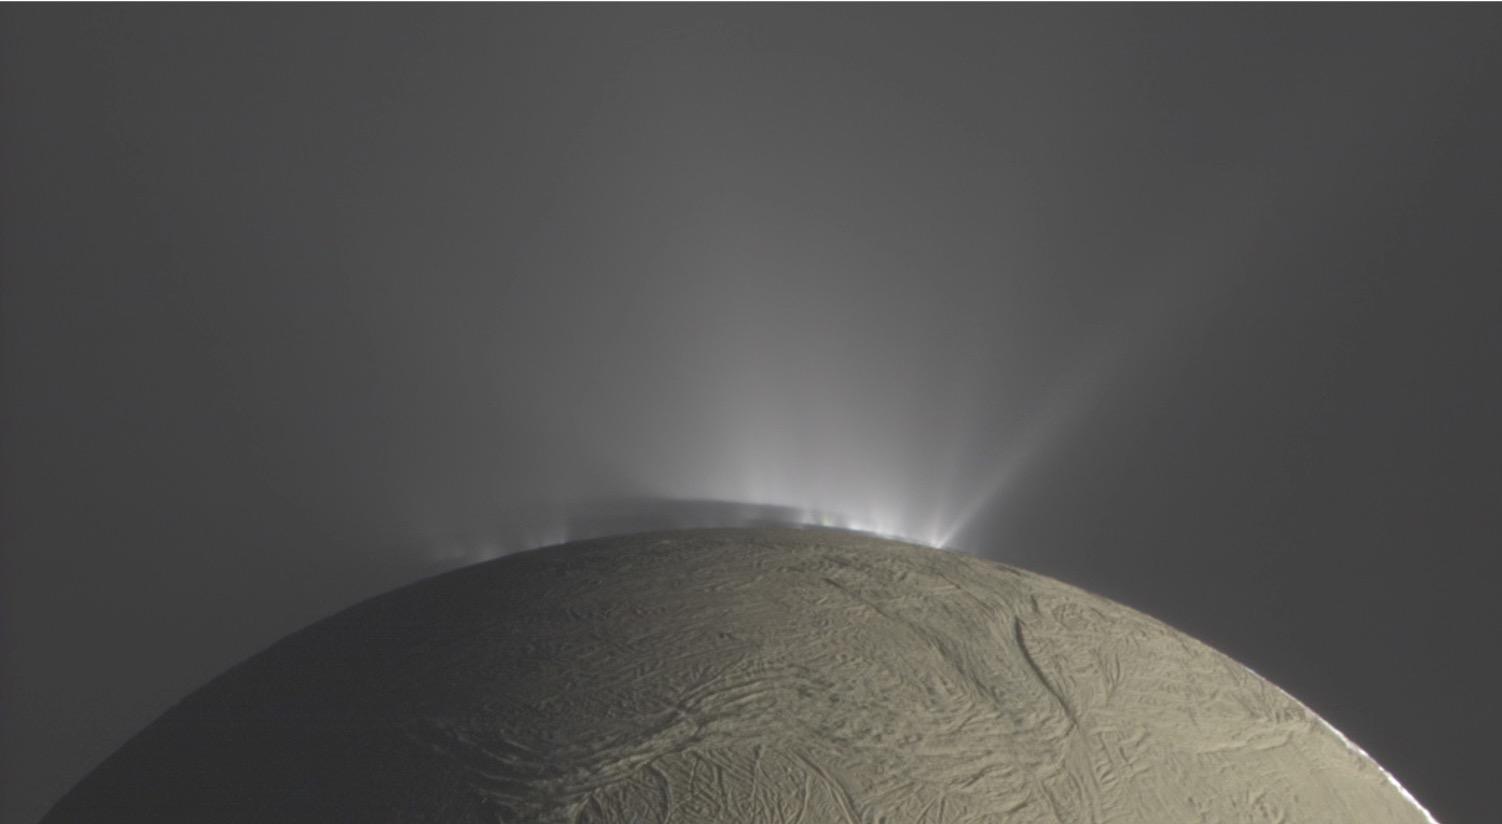 Aus Rissen in der Eiskruste des Enceladus schießen cryo-vulkanische Eisfontänen ins All hinaus. Die Eispartikel entstehen aus dem globalen Ozean, der sich unter der einige Kilometer mächtigen Eiskruste befindet.